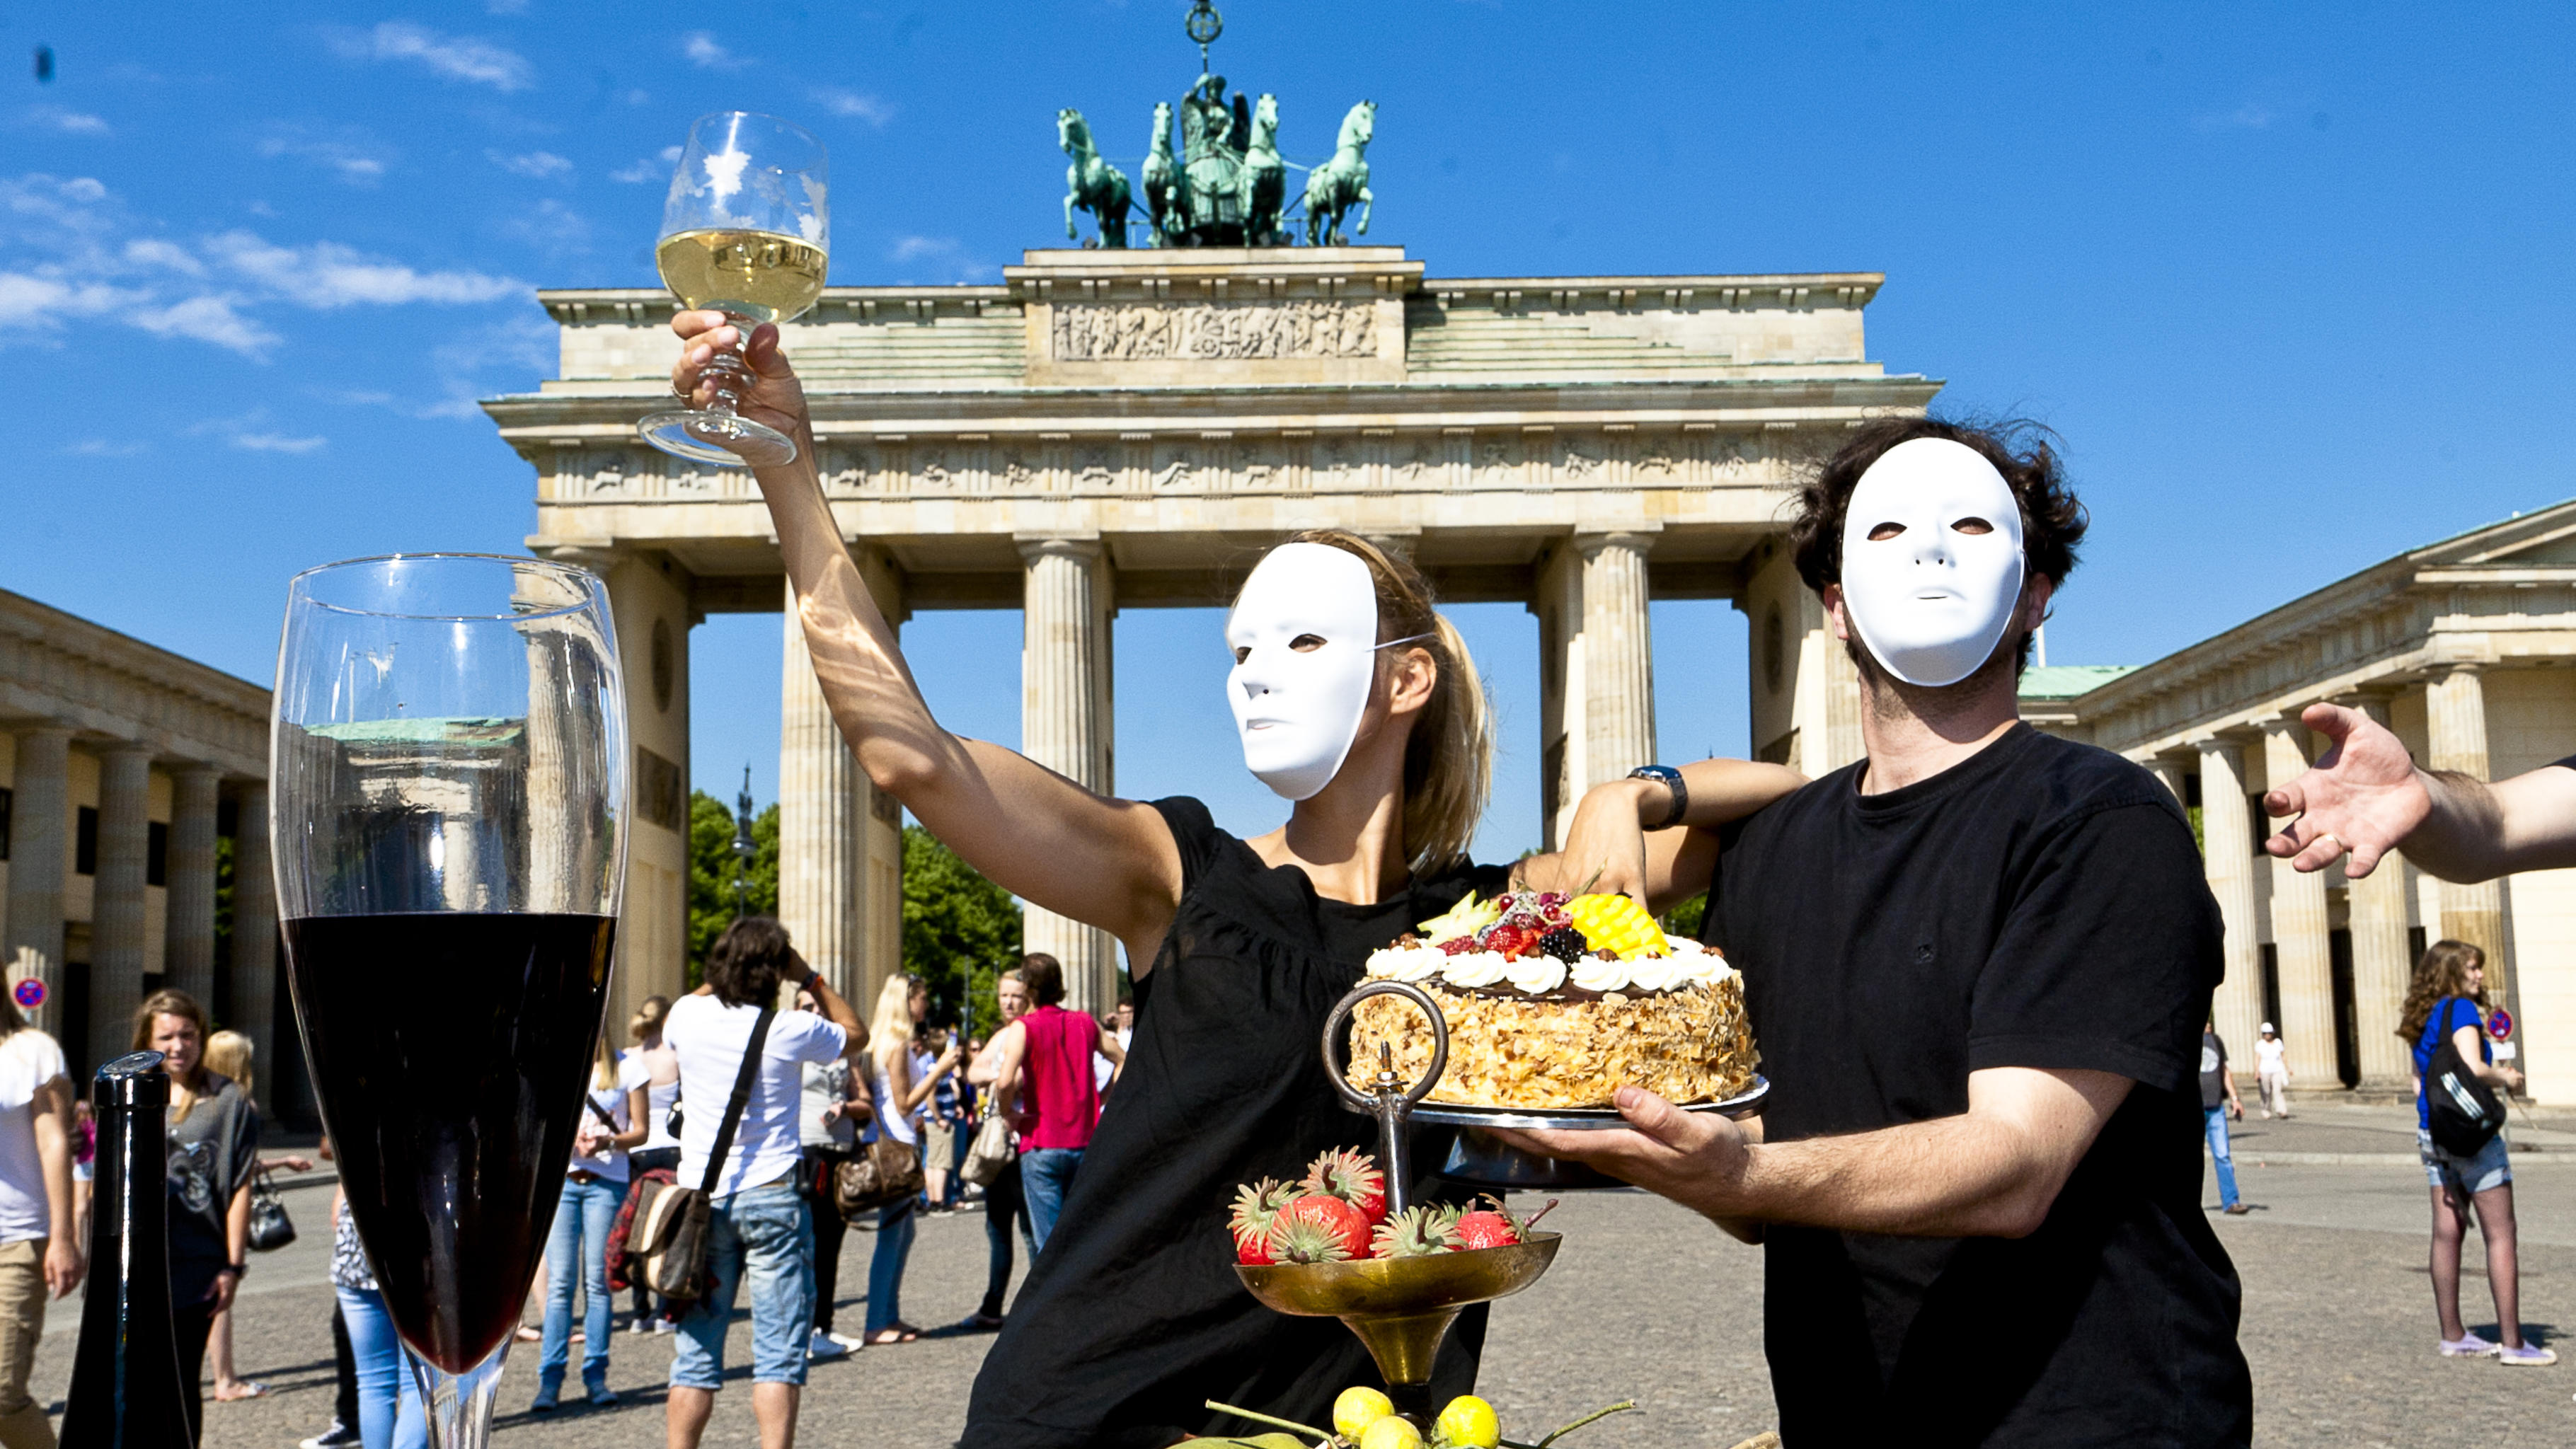 Oxfam startet die neue Kampagne "Mahlzeit! - Ein Planet. 9 Milliarden. Alle satt" mit einer Foto-Aktion vor dem Brandenburger Tor.